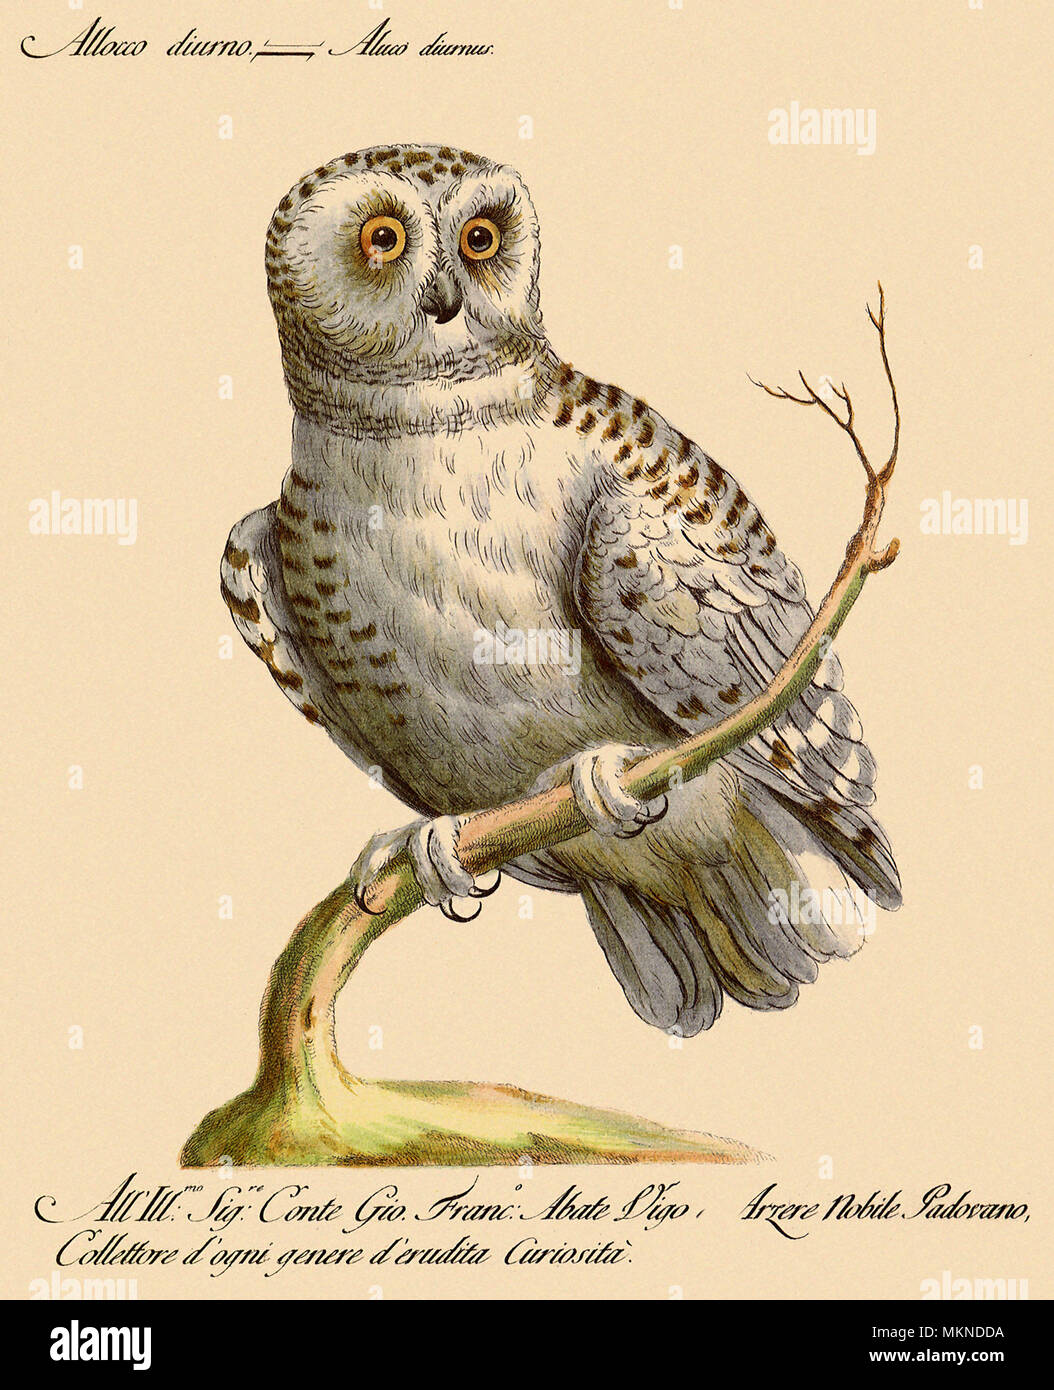 White Owl Stock Photo